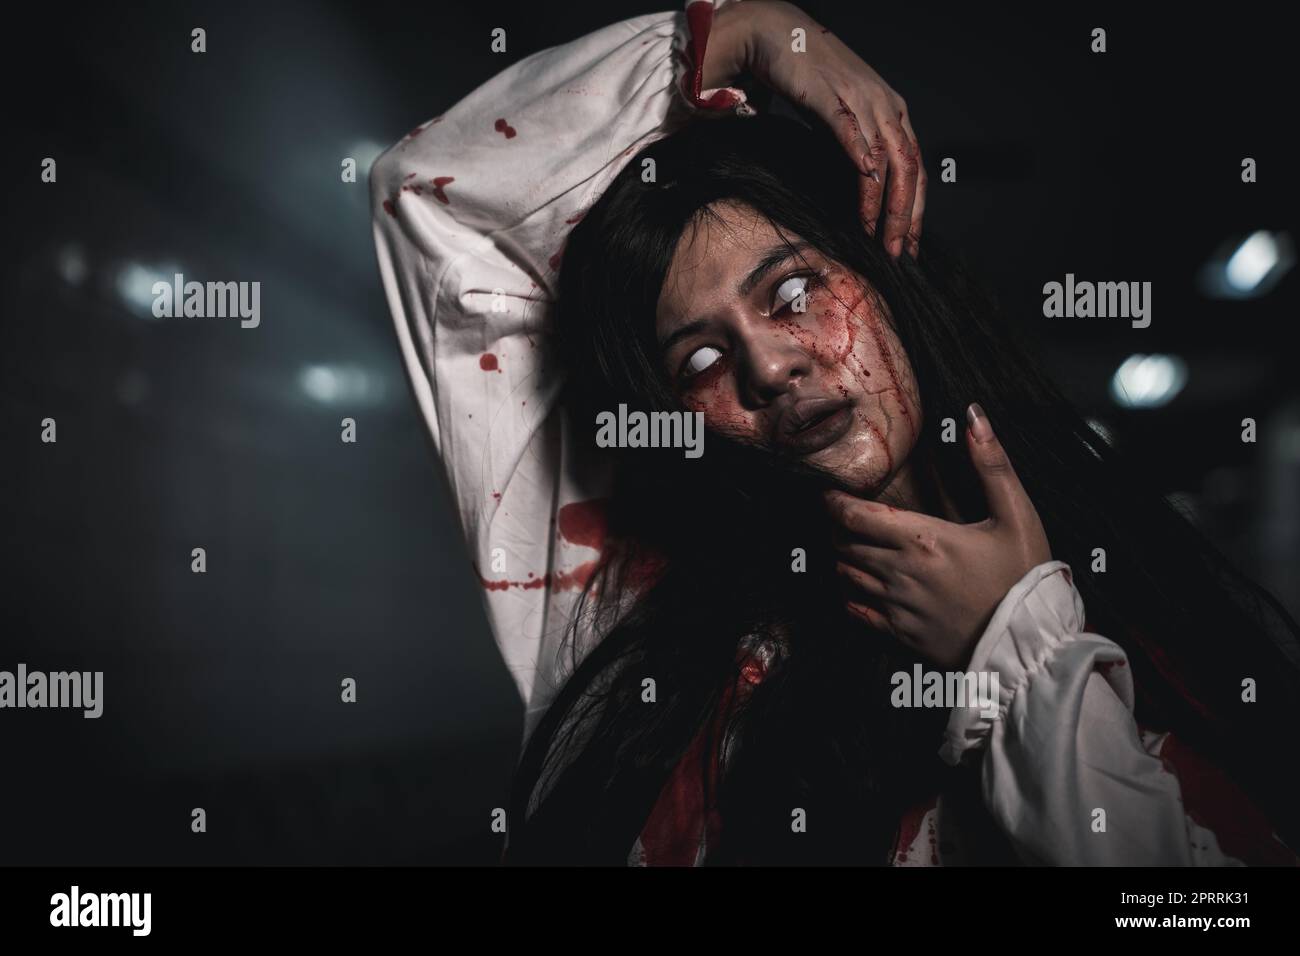 Horreur une femme sanguinaire fantôme ou zombie elle est horreur effrayante avec des cassures de son cou Banque D'Images